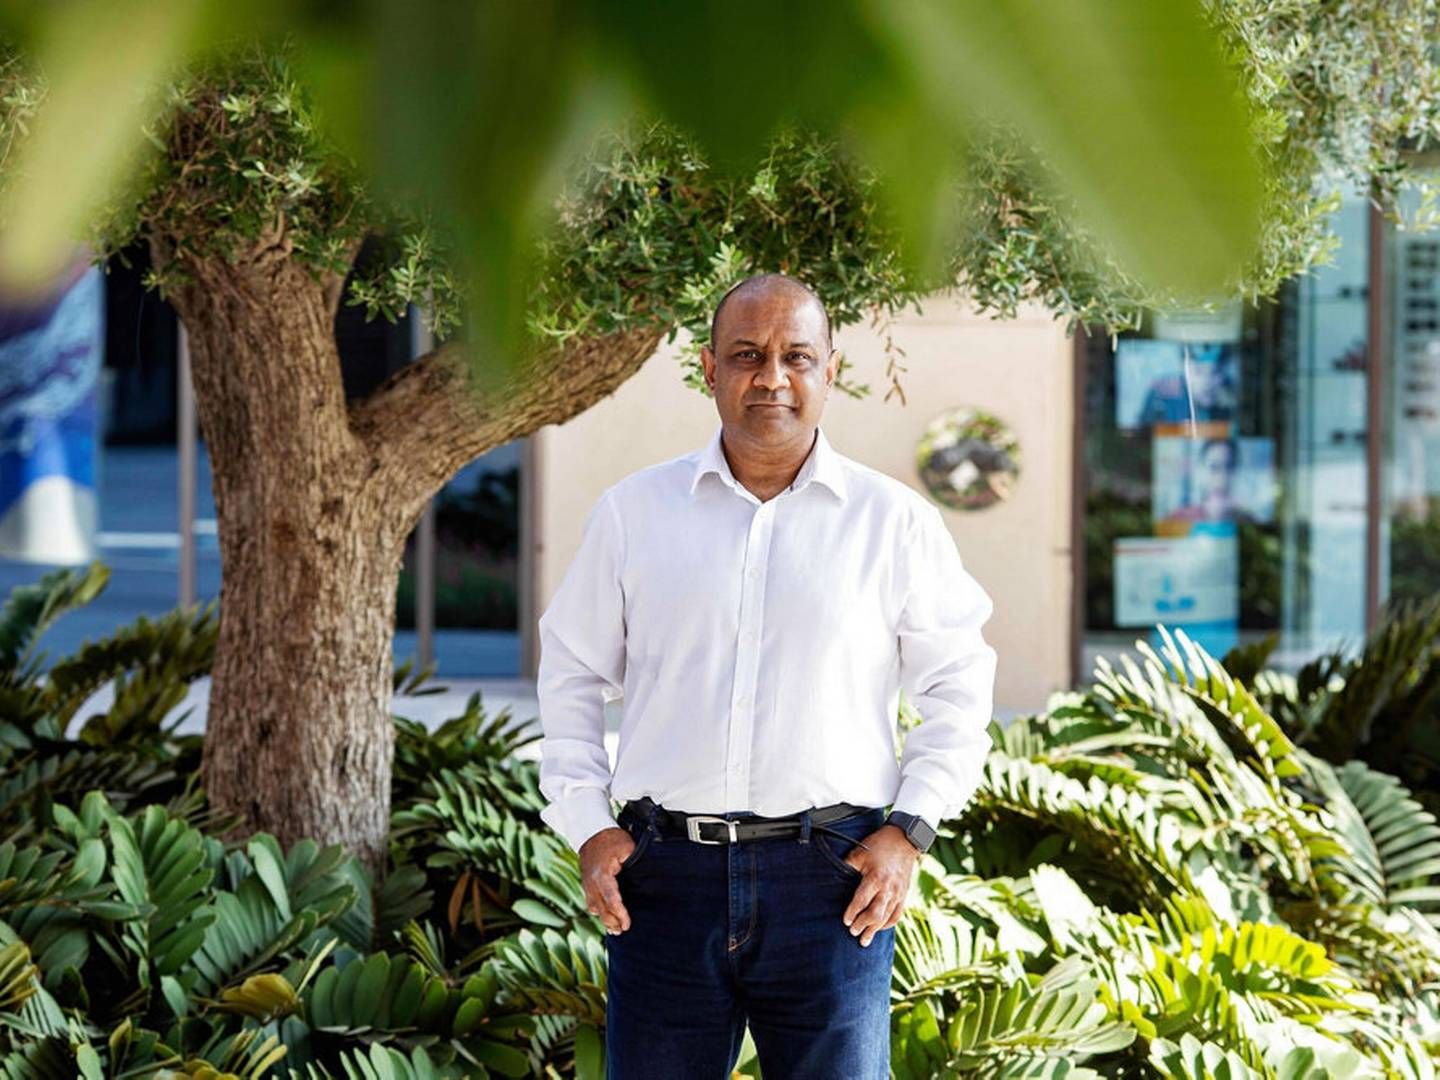 Britiske Sanjay Shah blev i juni anholdt af politiet i Dubai i De Forenede Arabiske Emirater, hvor han har boet i en villa på den kunstige palmeø Jumeirah. I Danmark er han tiltalt for svindel for over ni milliarder kroner. Sanjay Shah nægter at have brudt loven. Arkivfoto: Christopher Pike/Ritzau Scanpix